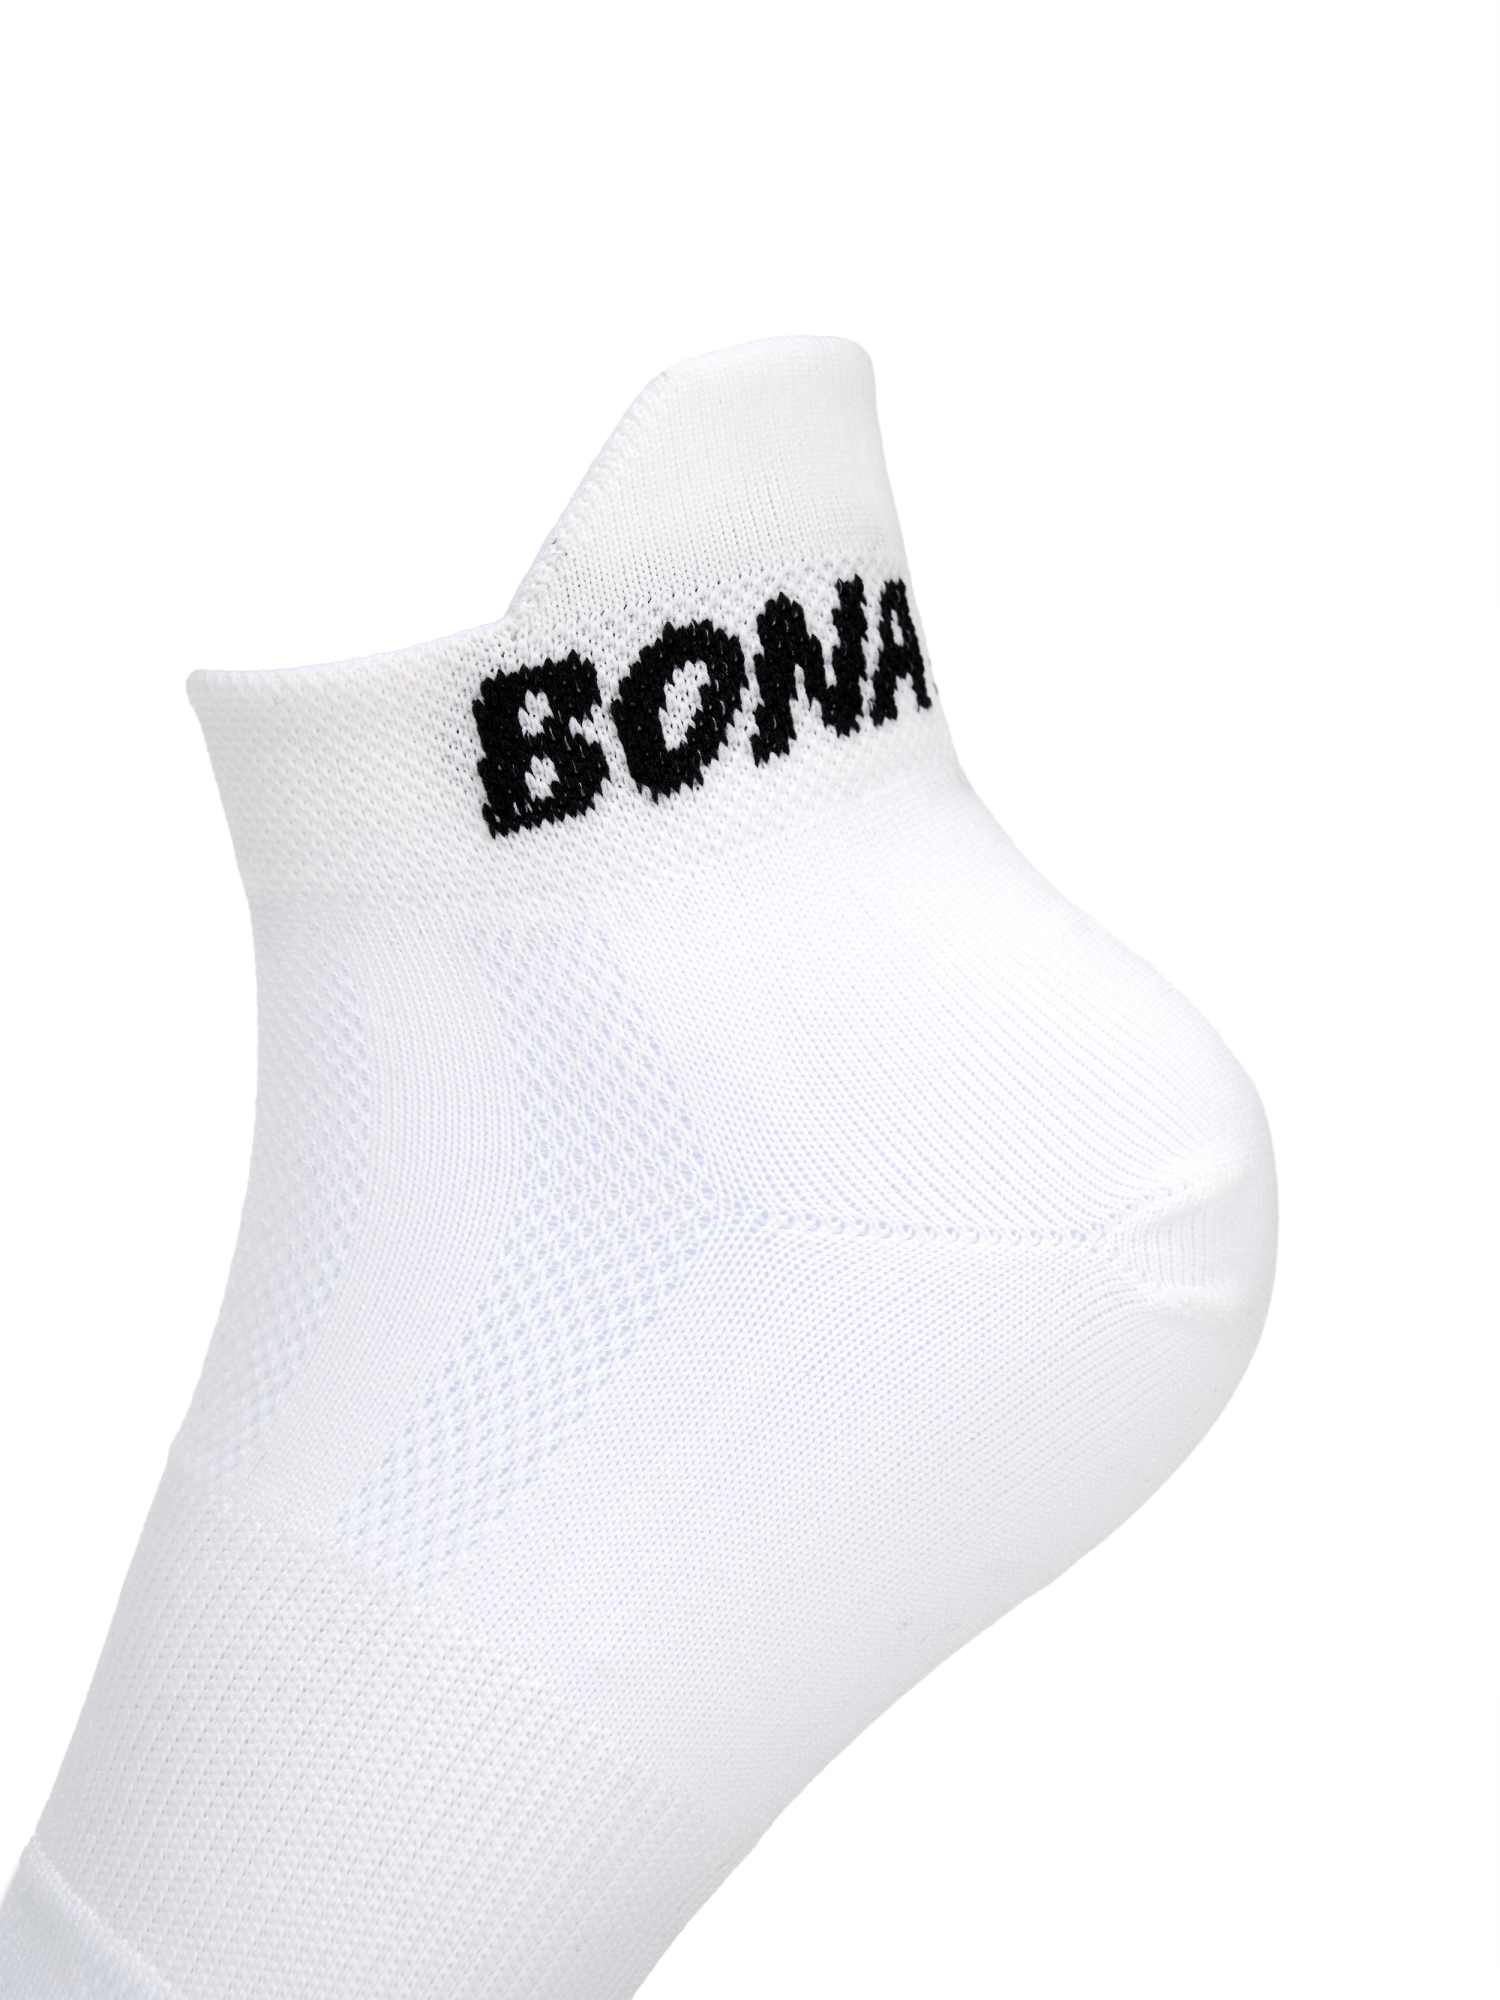 Bona Fide: Socks "White"(3 пары) фото 8